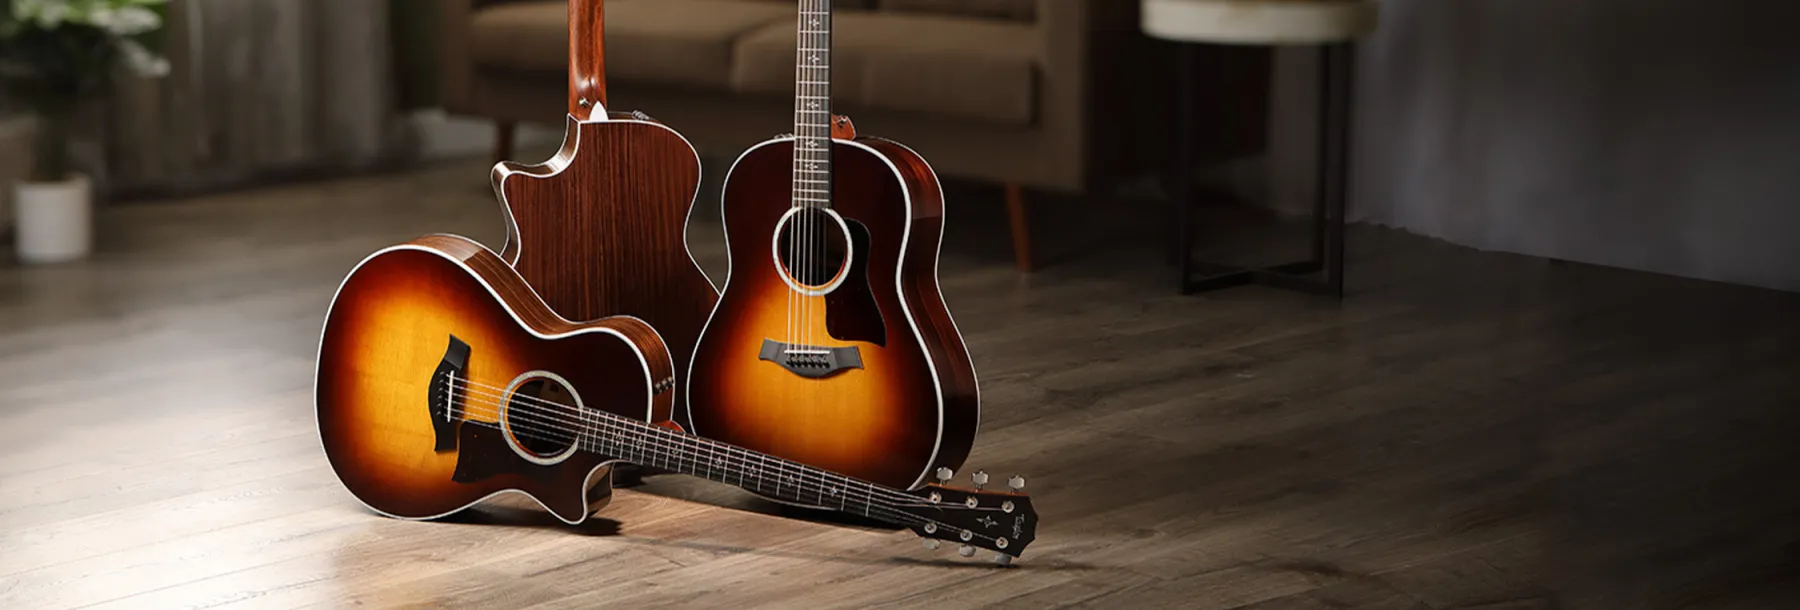 400 Series Guitars | Taylor Guitars